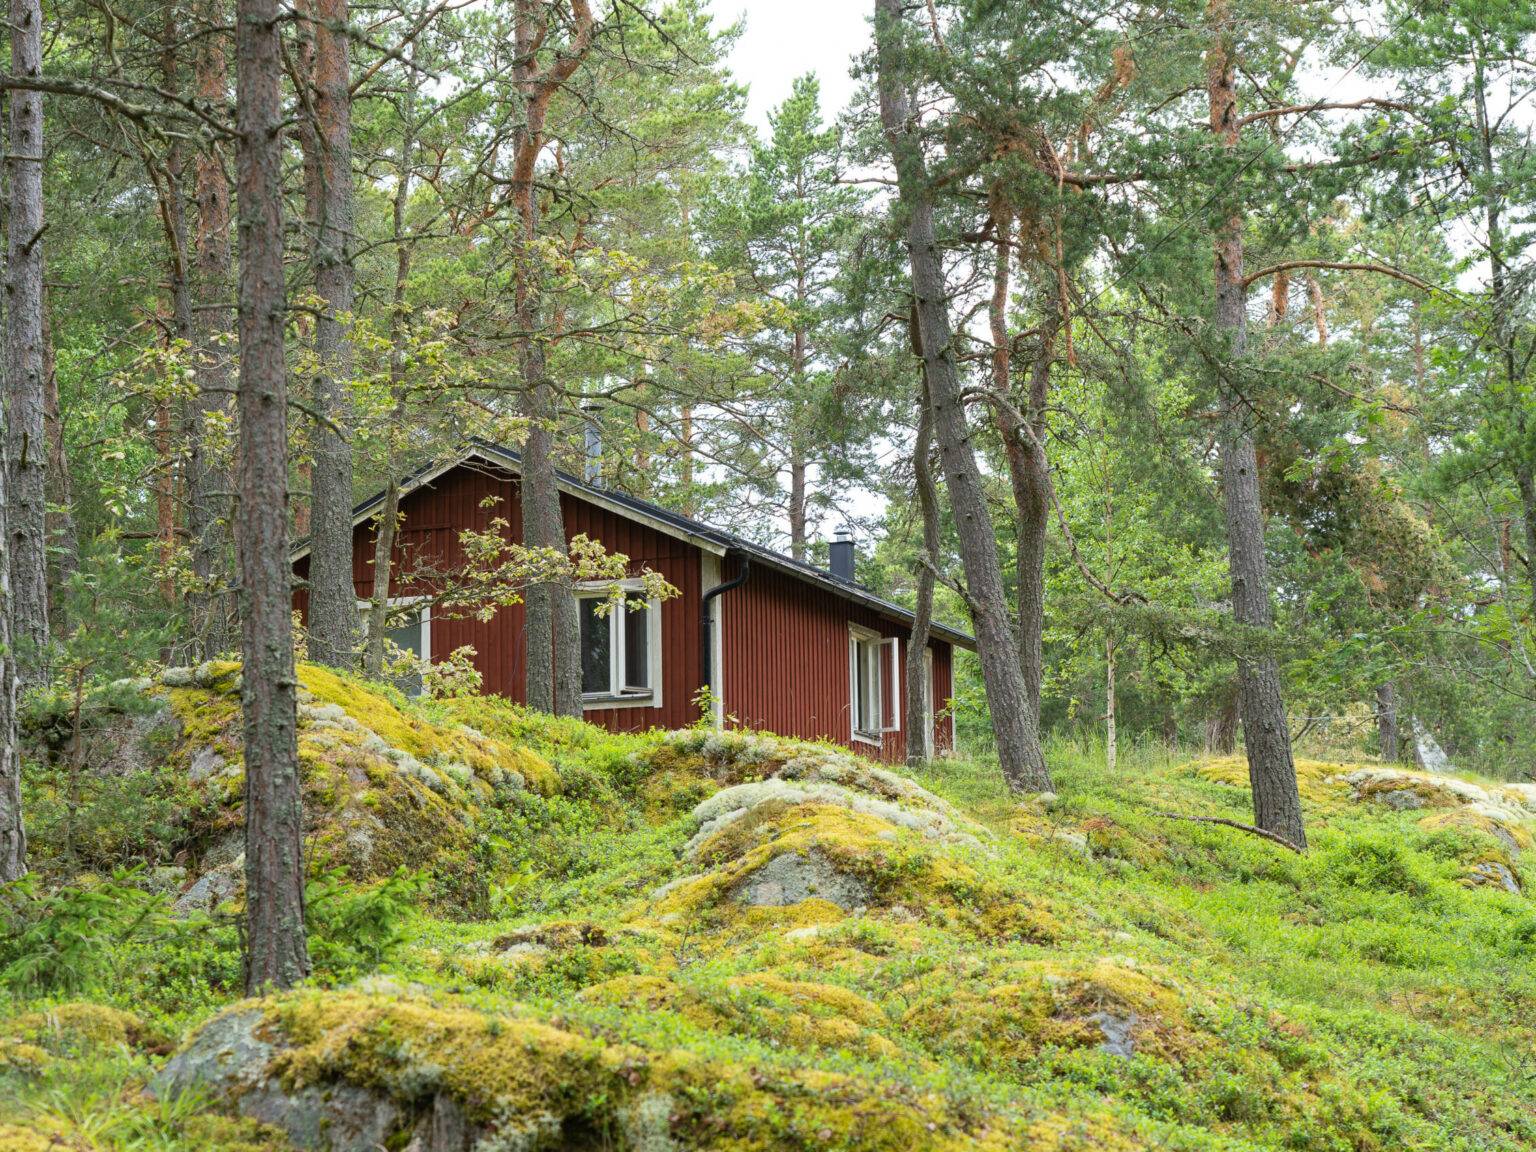 Auf der Insel Grinda stehen kleine rote Holzhäuser als Unterkünfte für die Besucher umgeben von Wald und Wiesen.